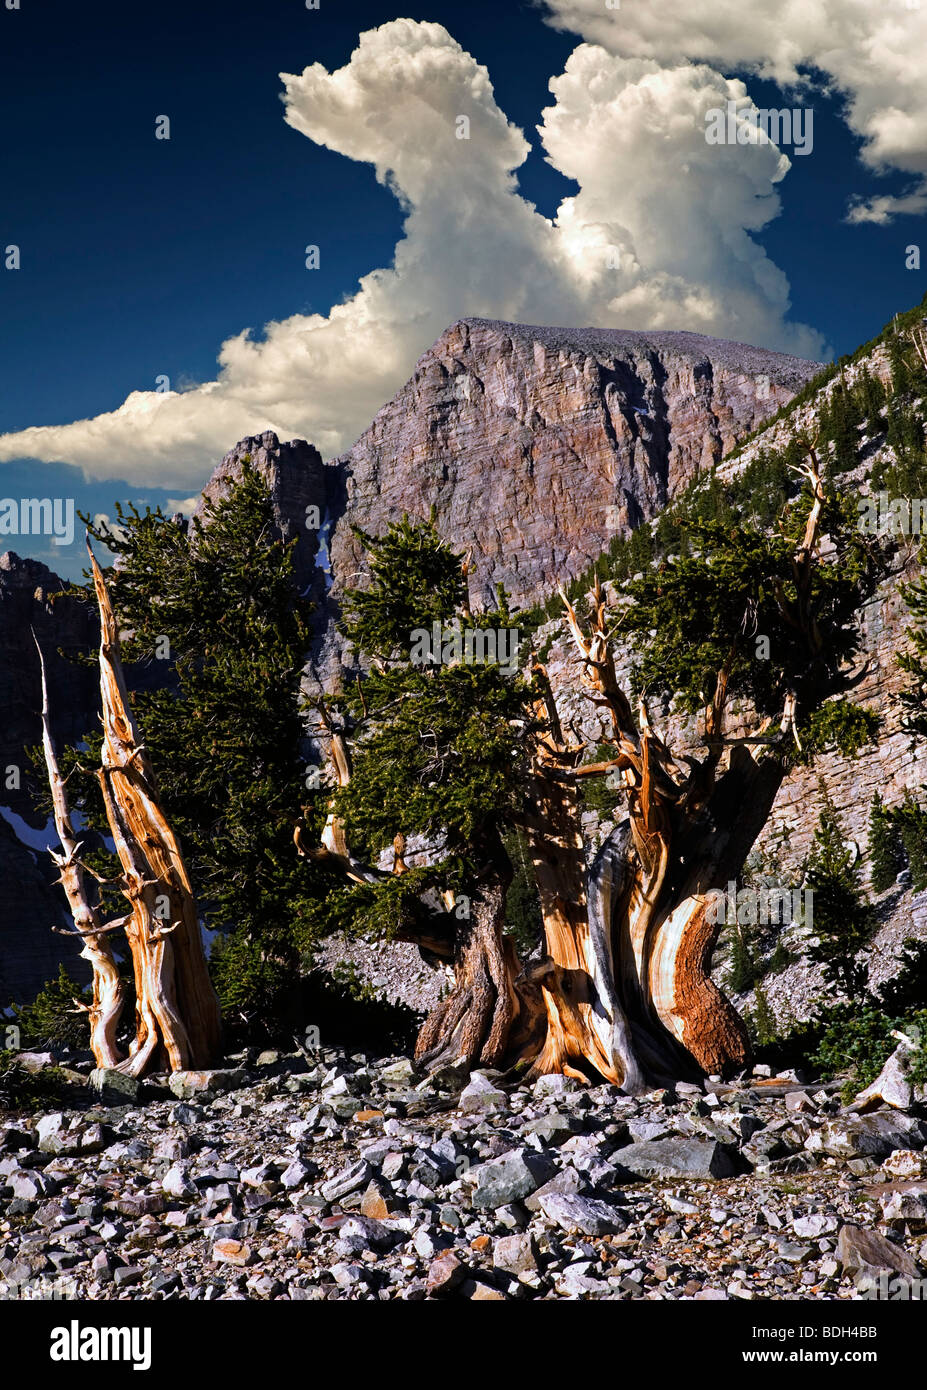 Bristlecone pines e Wheeler Peak. Parco nazionale Great Basin, Nevada. Il cielo è stato aggiunto a questa immagine Foto Stock